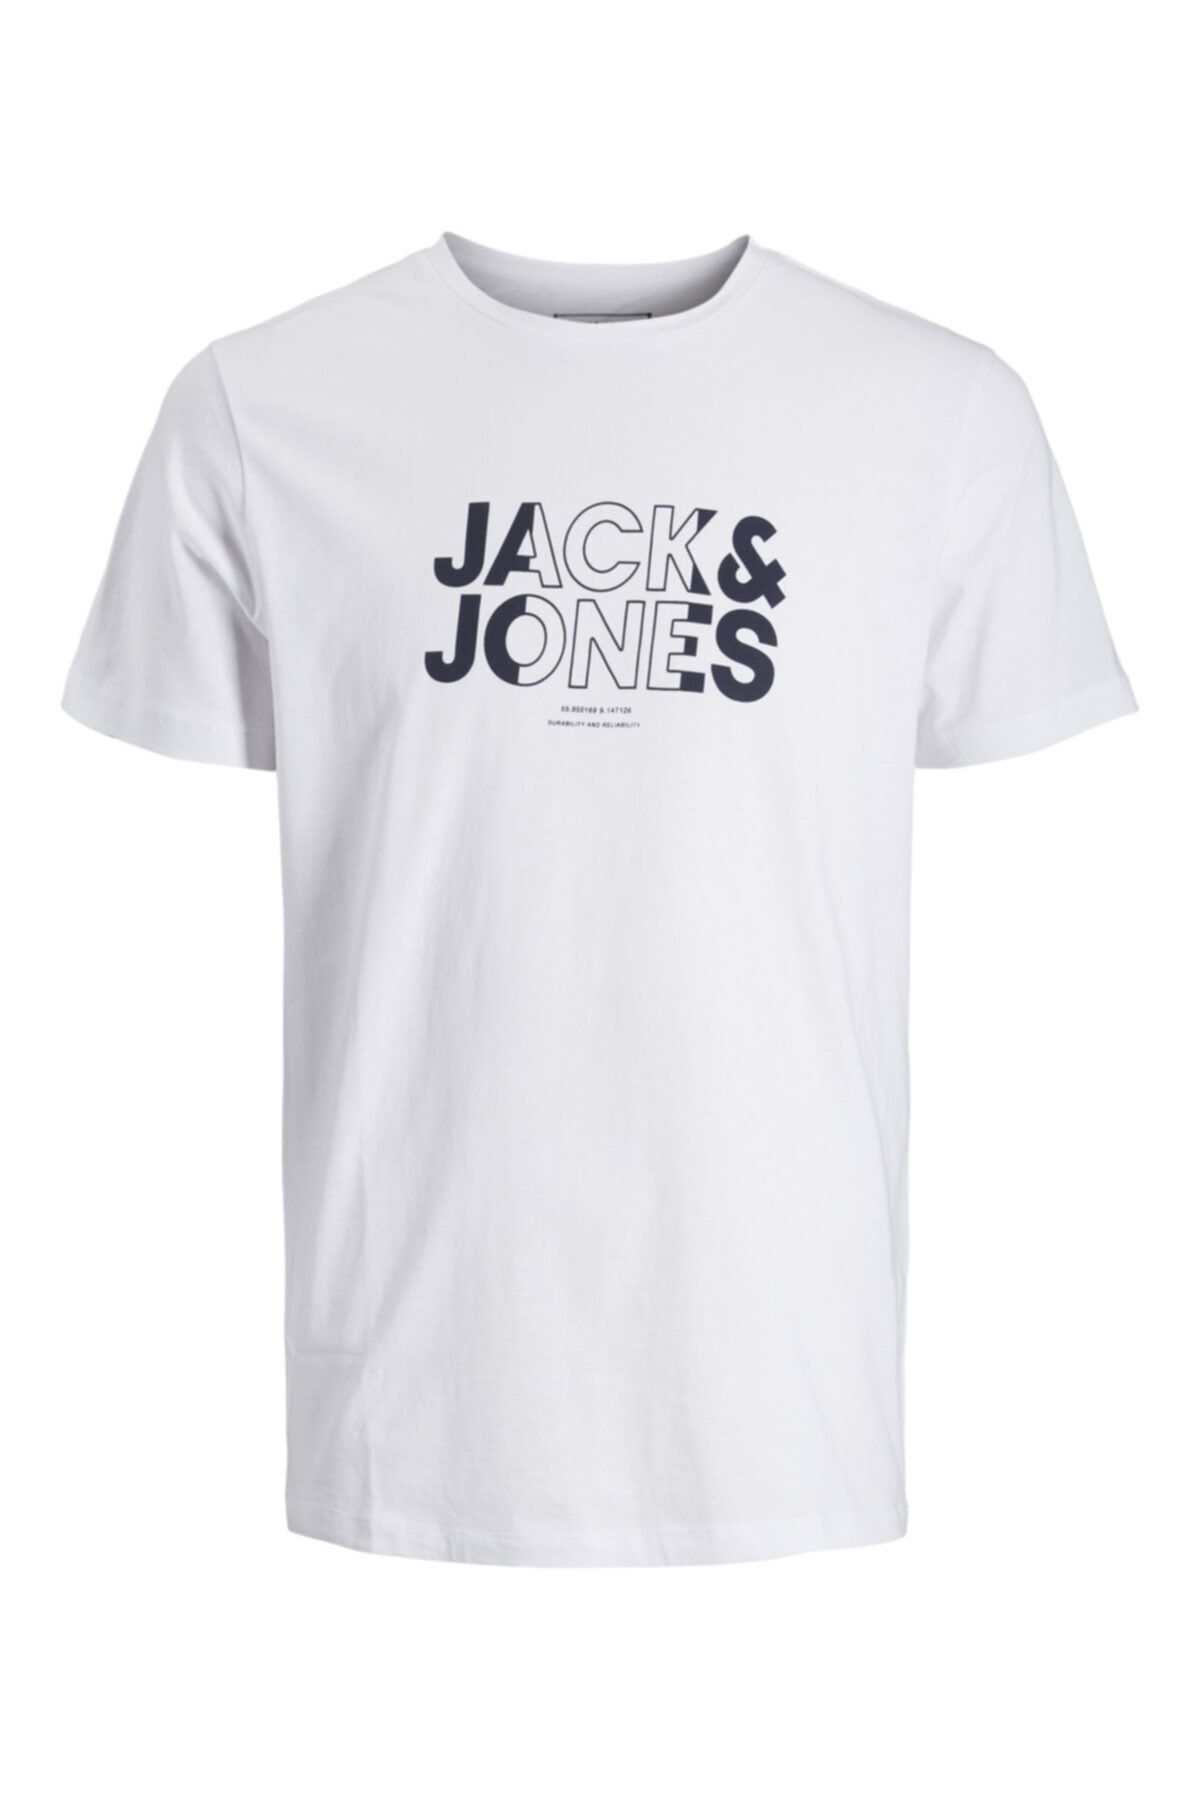 Jack & Jones Bisiklet Yaka T-shirt 12202303 Jcofreddy